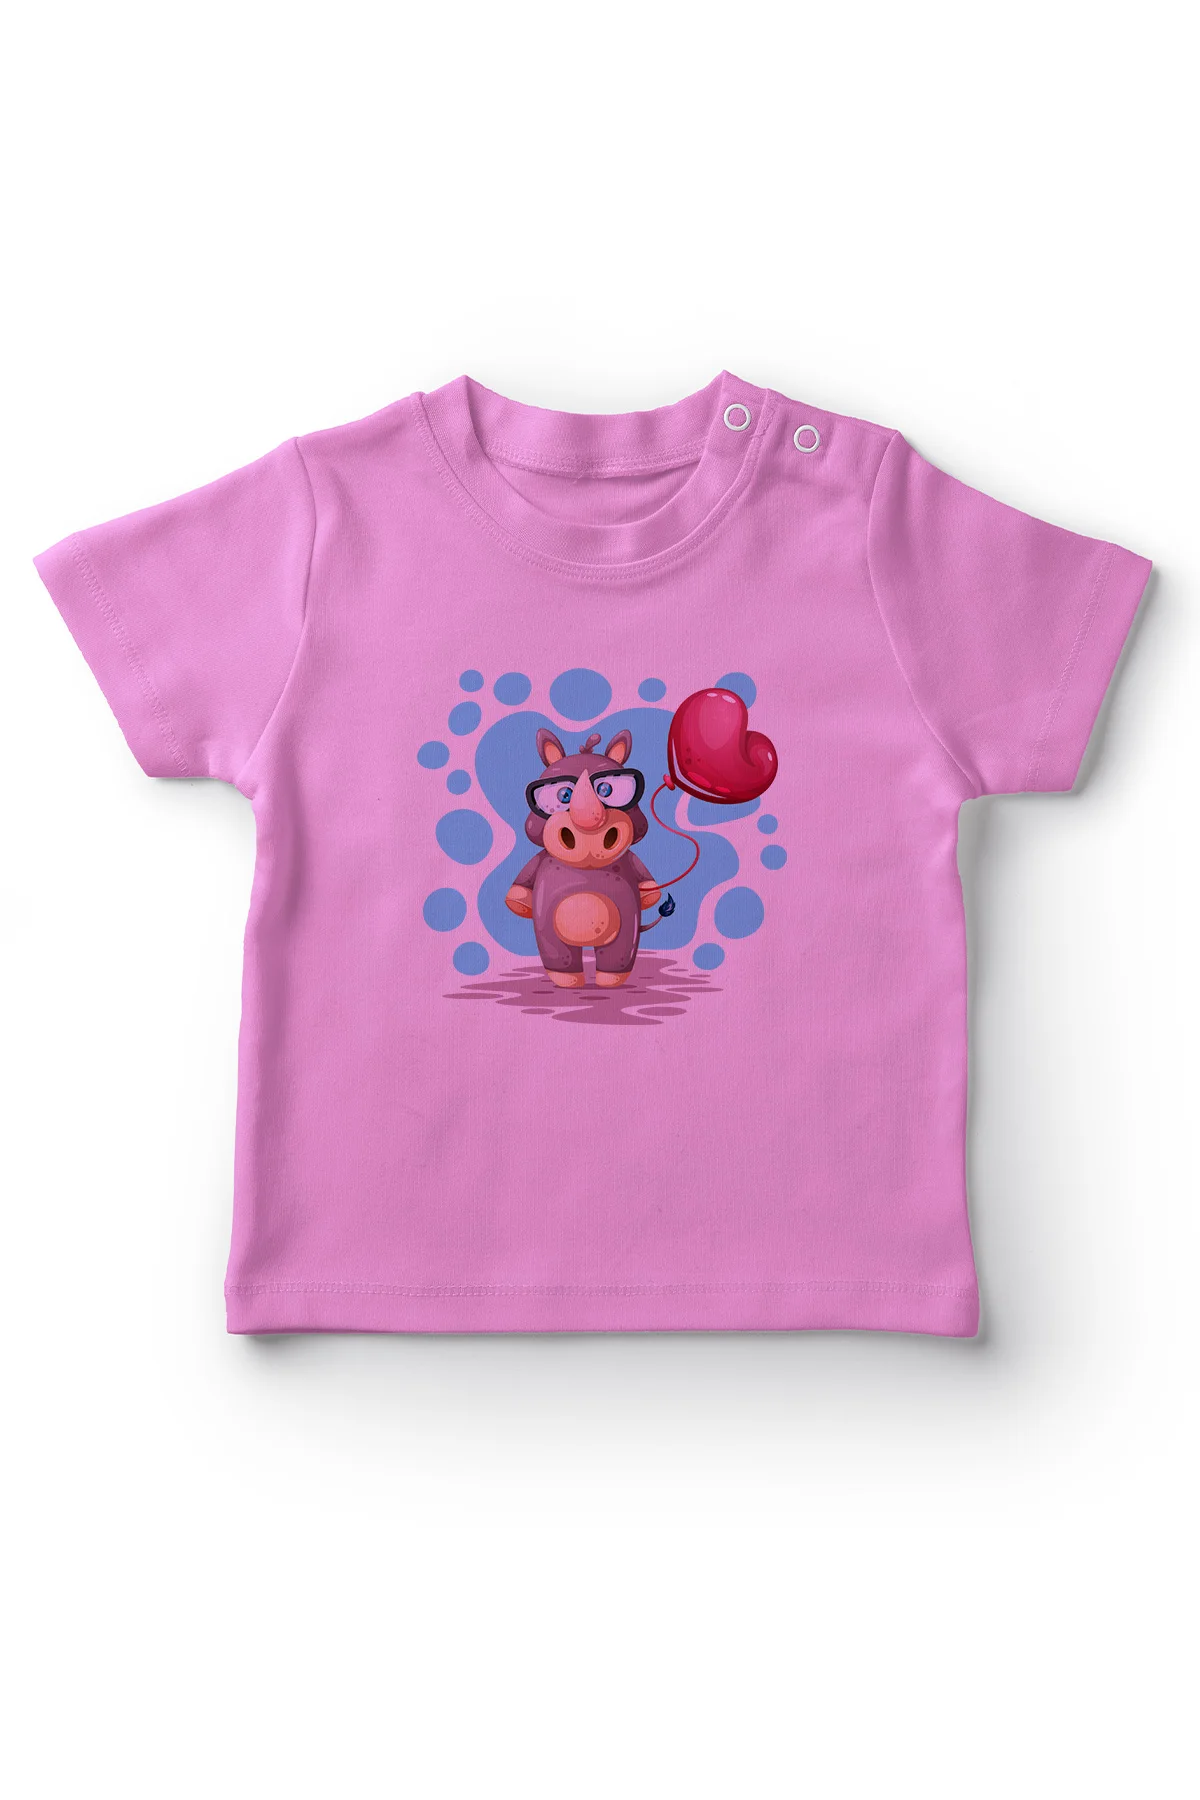 Angemiel/детская футболка для маленьких девочек розового цвета с изображением